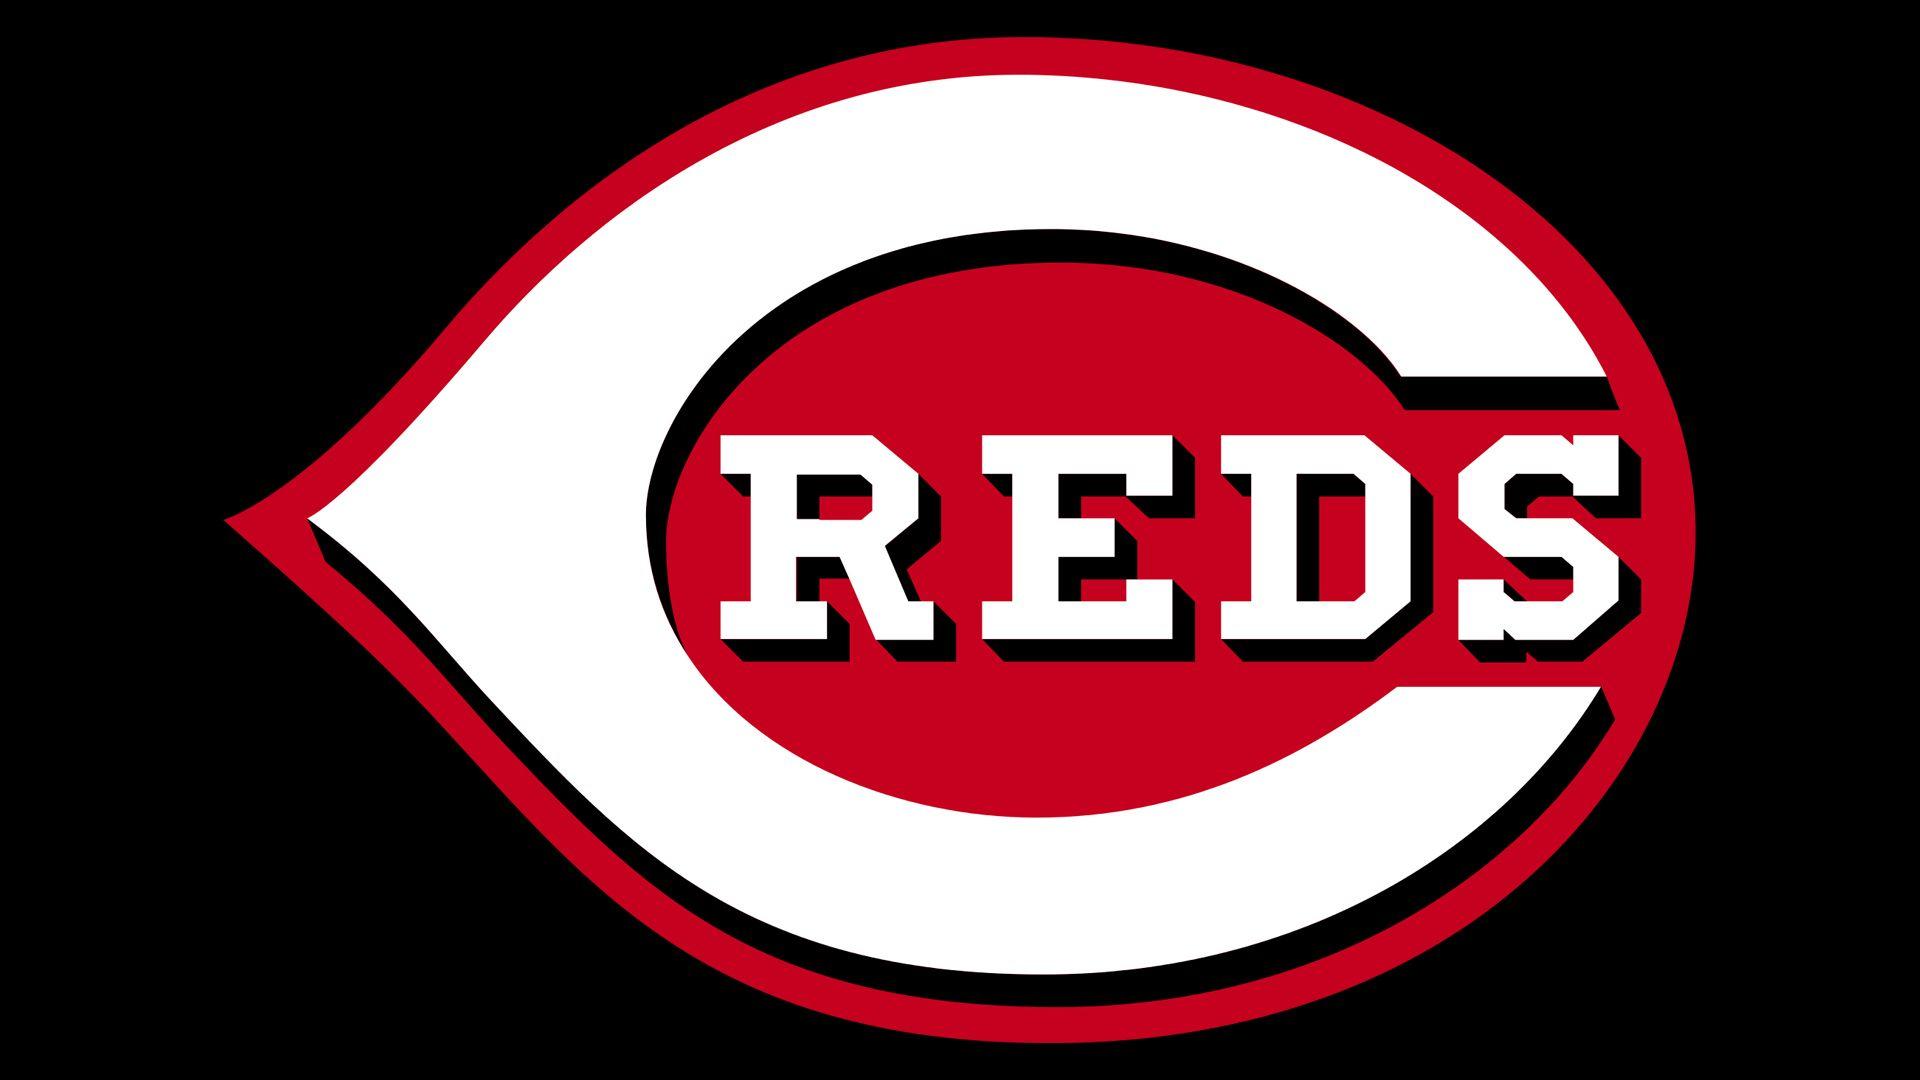 New Reds Logo - Cincinnati Reds Logo, Cincinnati Reds Symbol, Meaning, History and ...